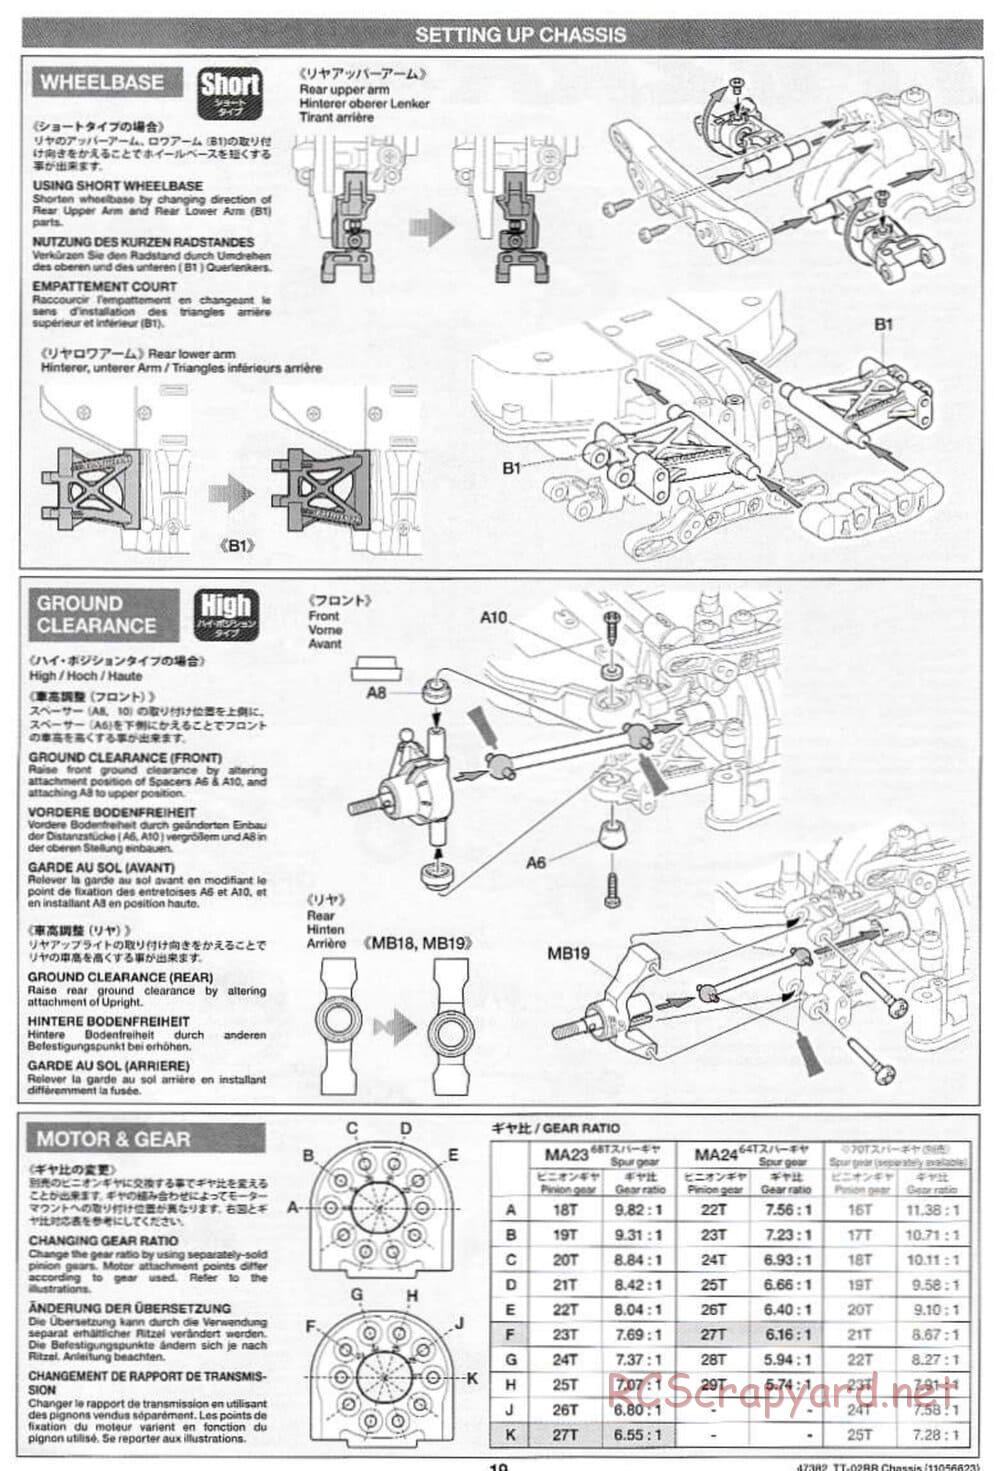 Tamiya - TT-02RR Chassis - Manual - Page 19